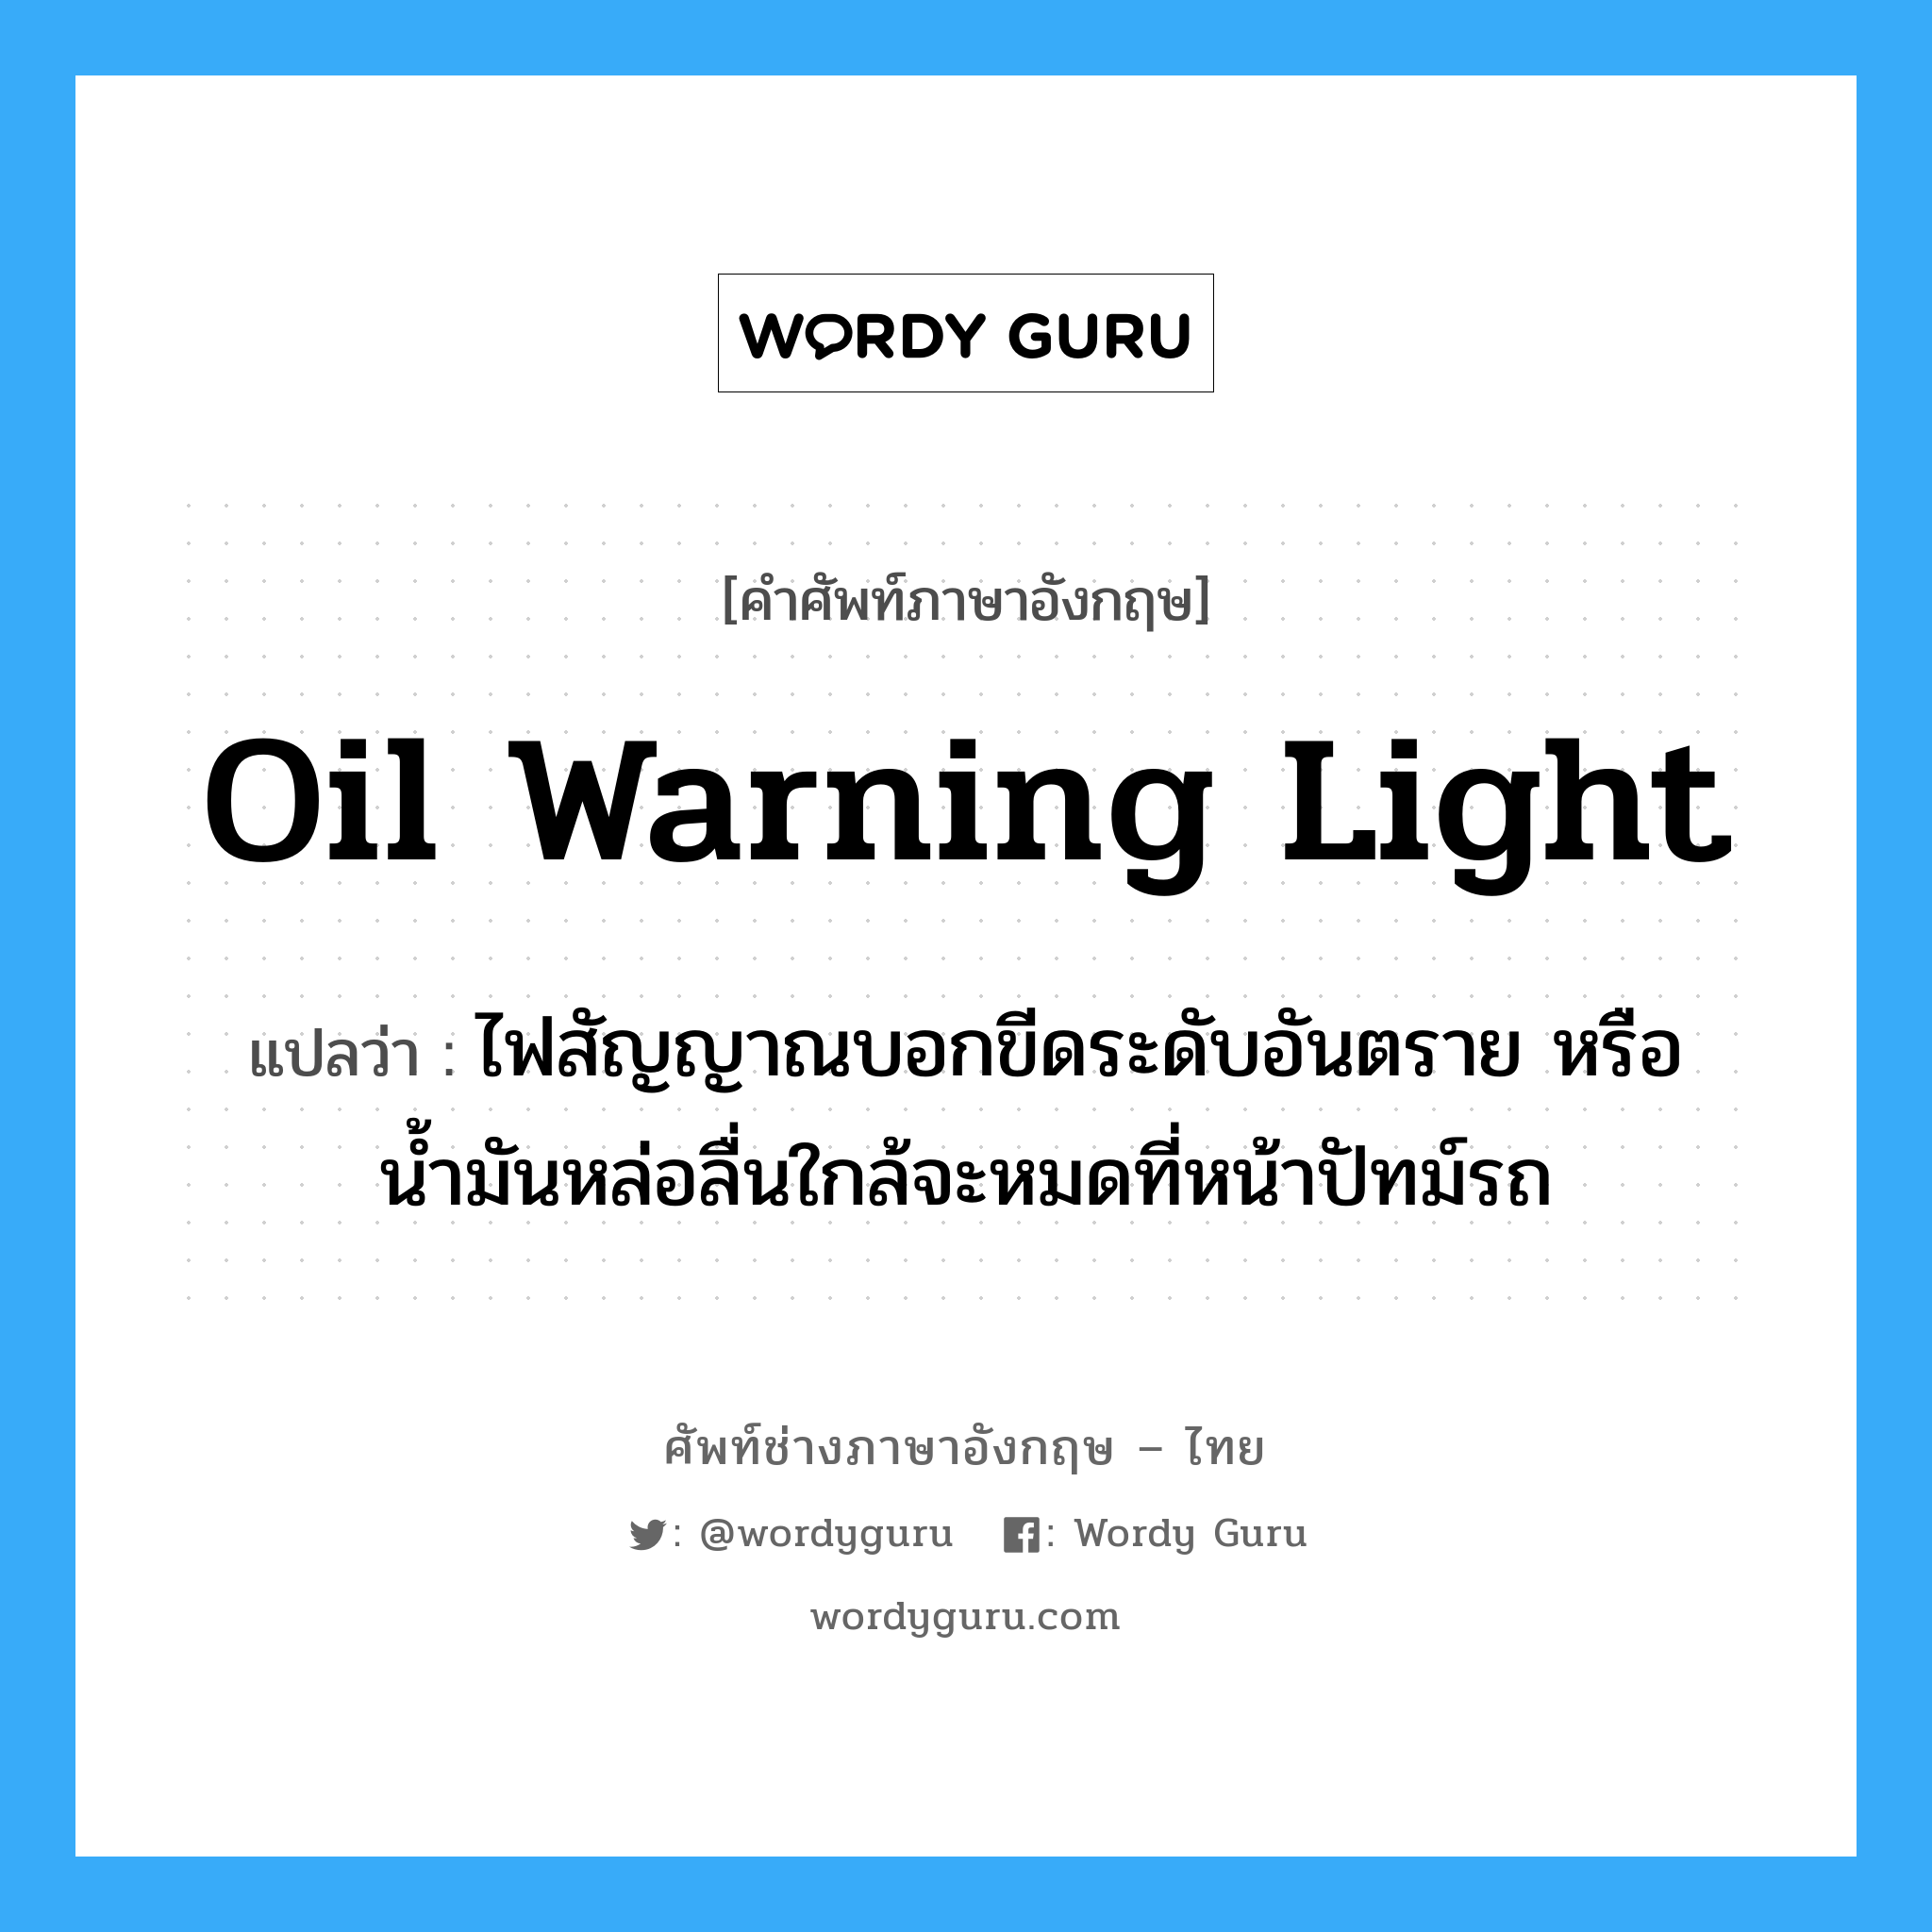 oil warning light แปลว่า?, คำศัพท์ช่างภาษาอังกฤษ - ไทย oil warning light คำศัพท์ภาษาอังกฤษ oil warning light แปลว่า ไฟสัญญาณบอกขีดระดับอันตราย หรือน้ำมันหล่อลื่นใกล้จะหมดที่หน้าปัทม์รถ